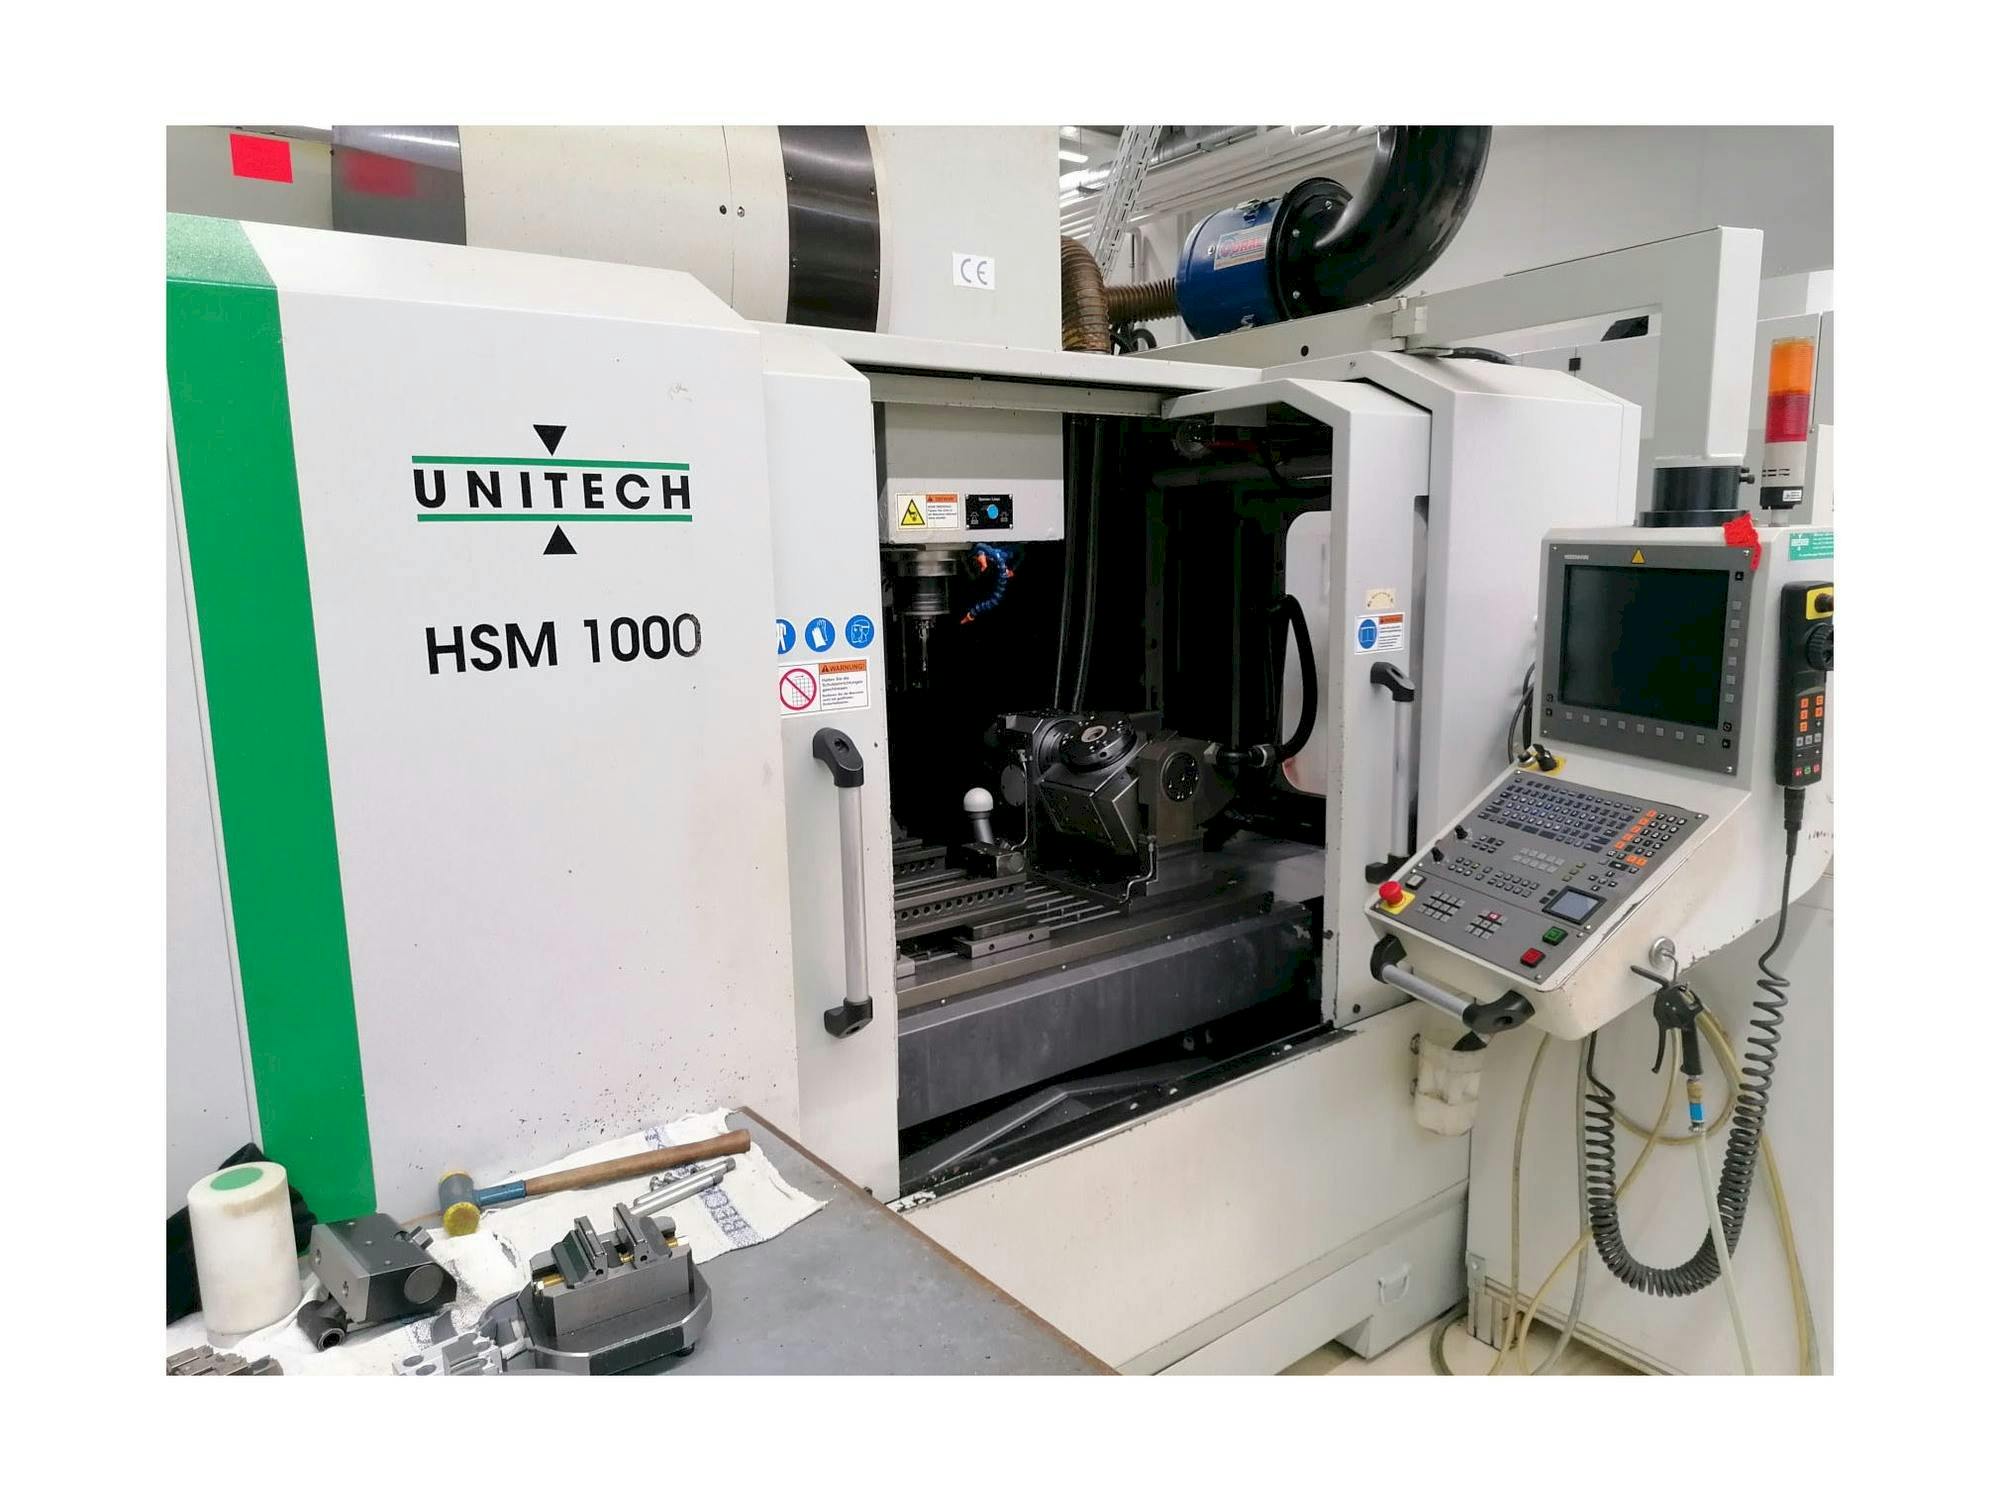 Vista frontal de la máquina UNITECH HSM1000